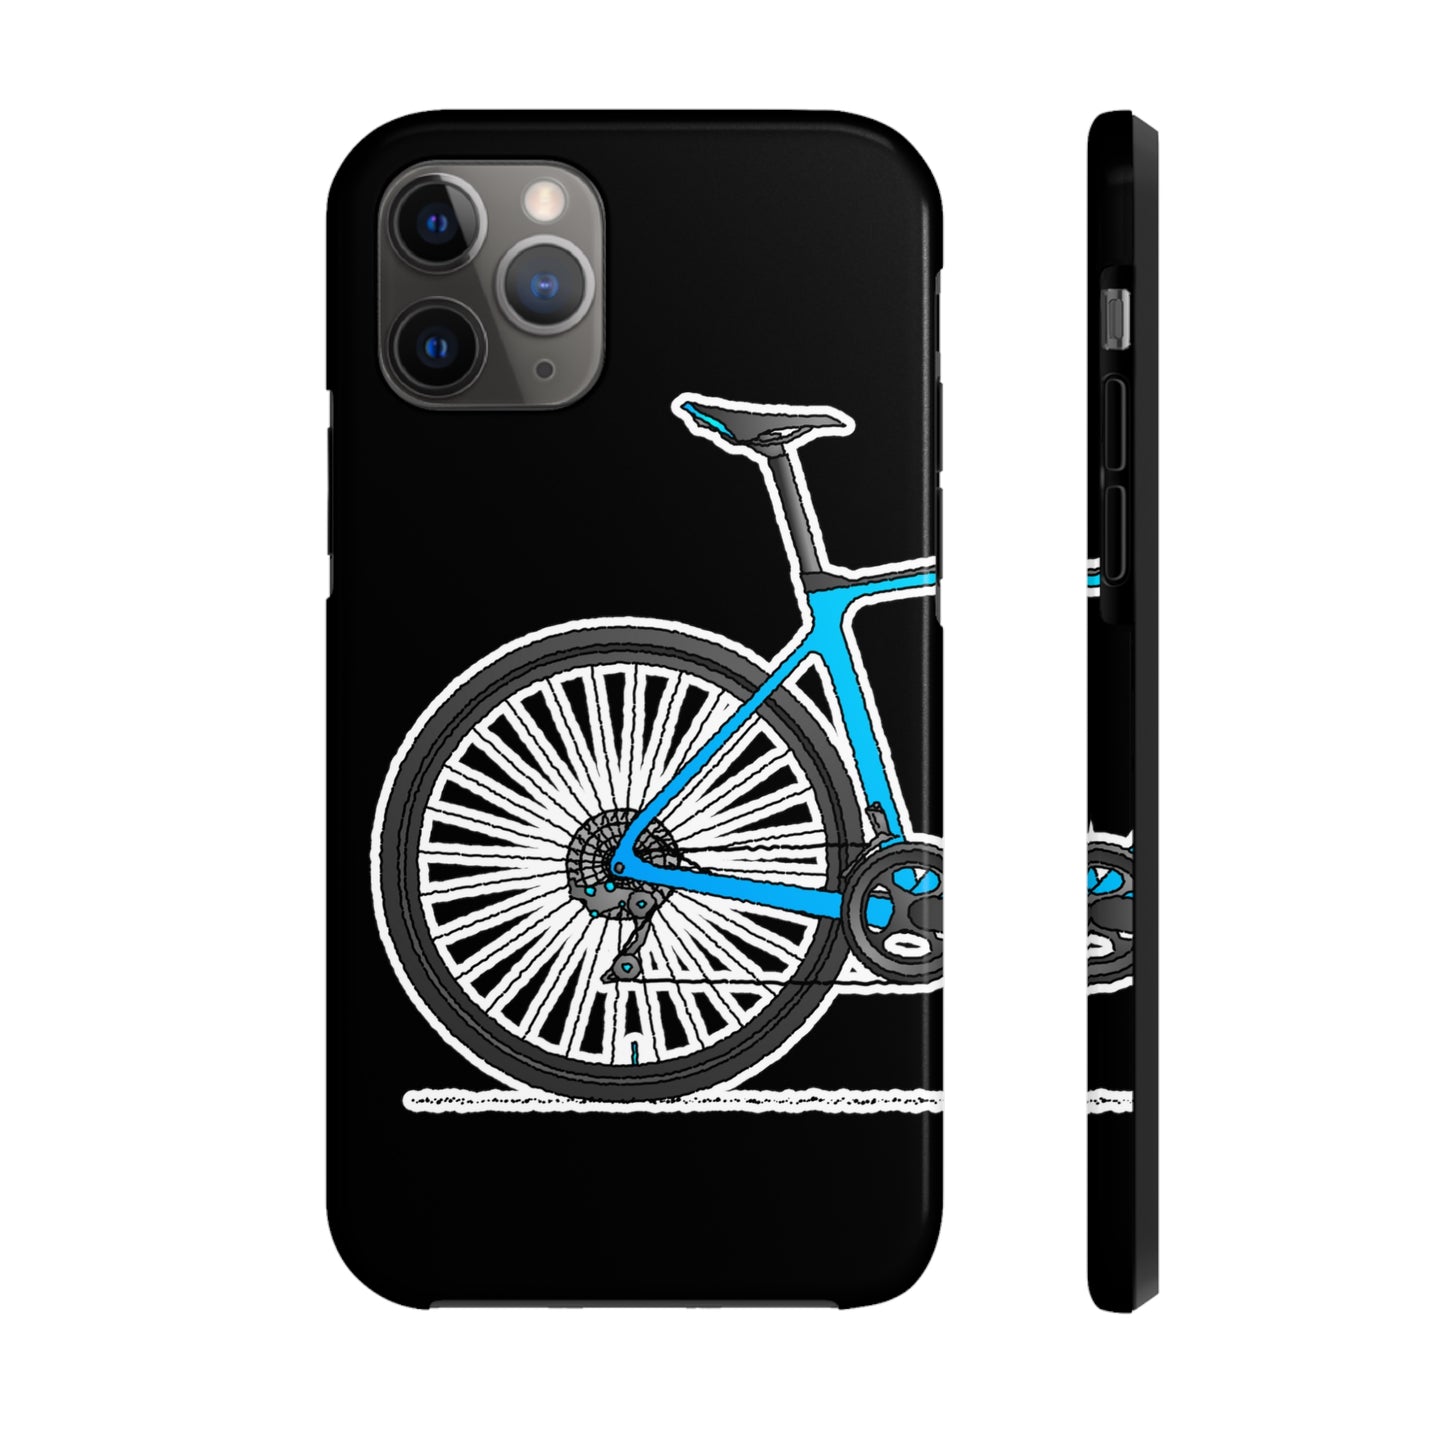 Bicycle iPhone Tough Case. Free Bike Wallpaper.